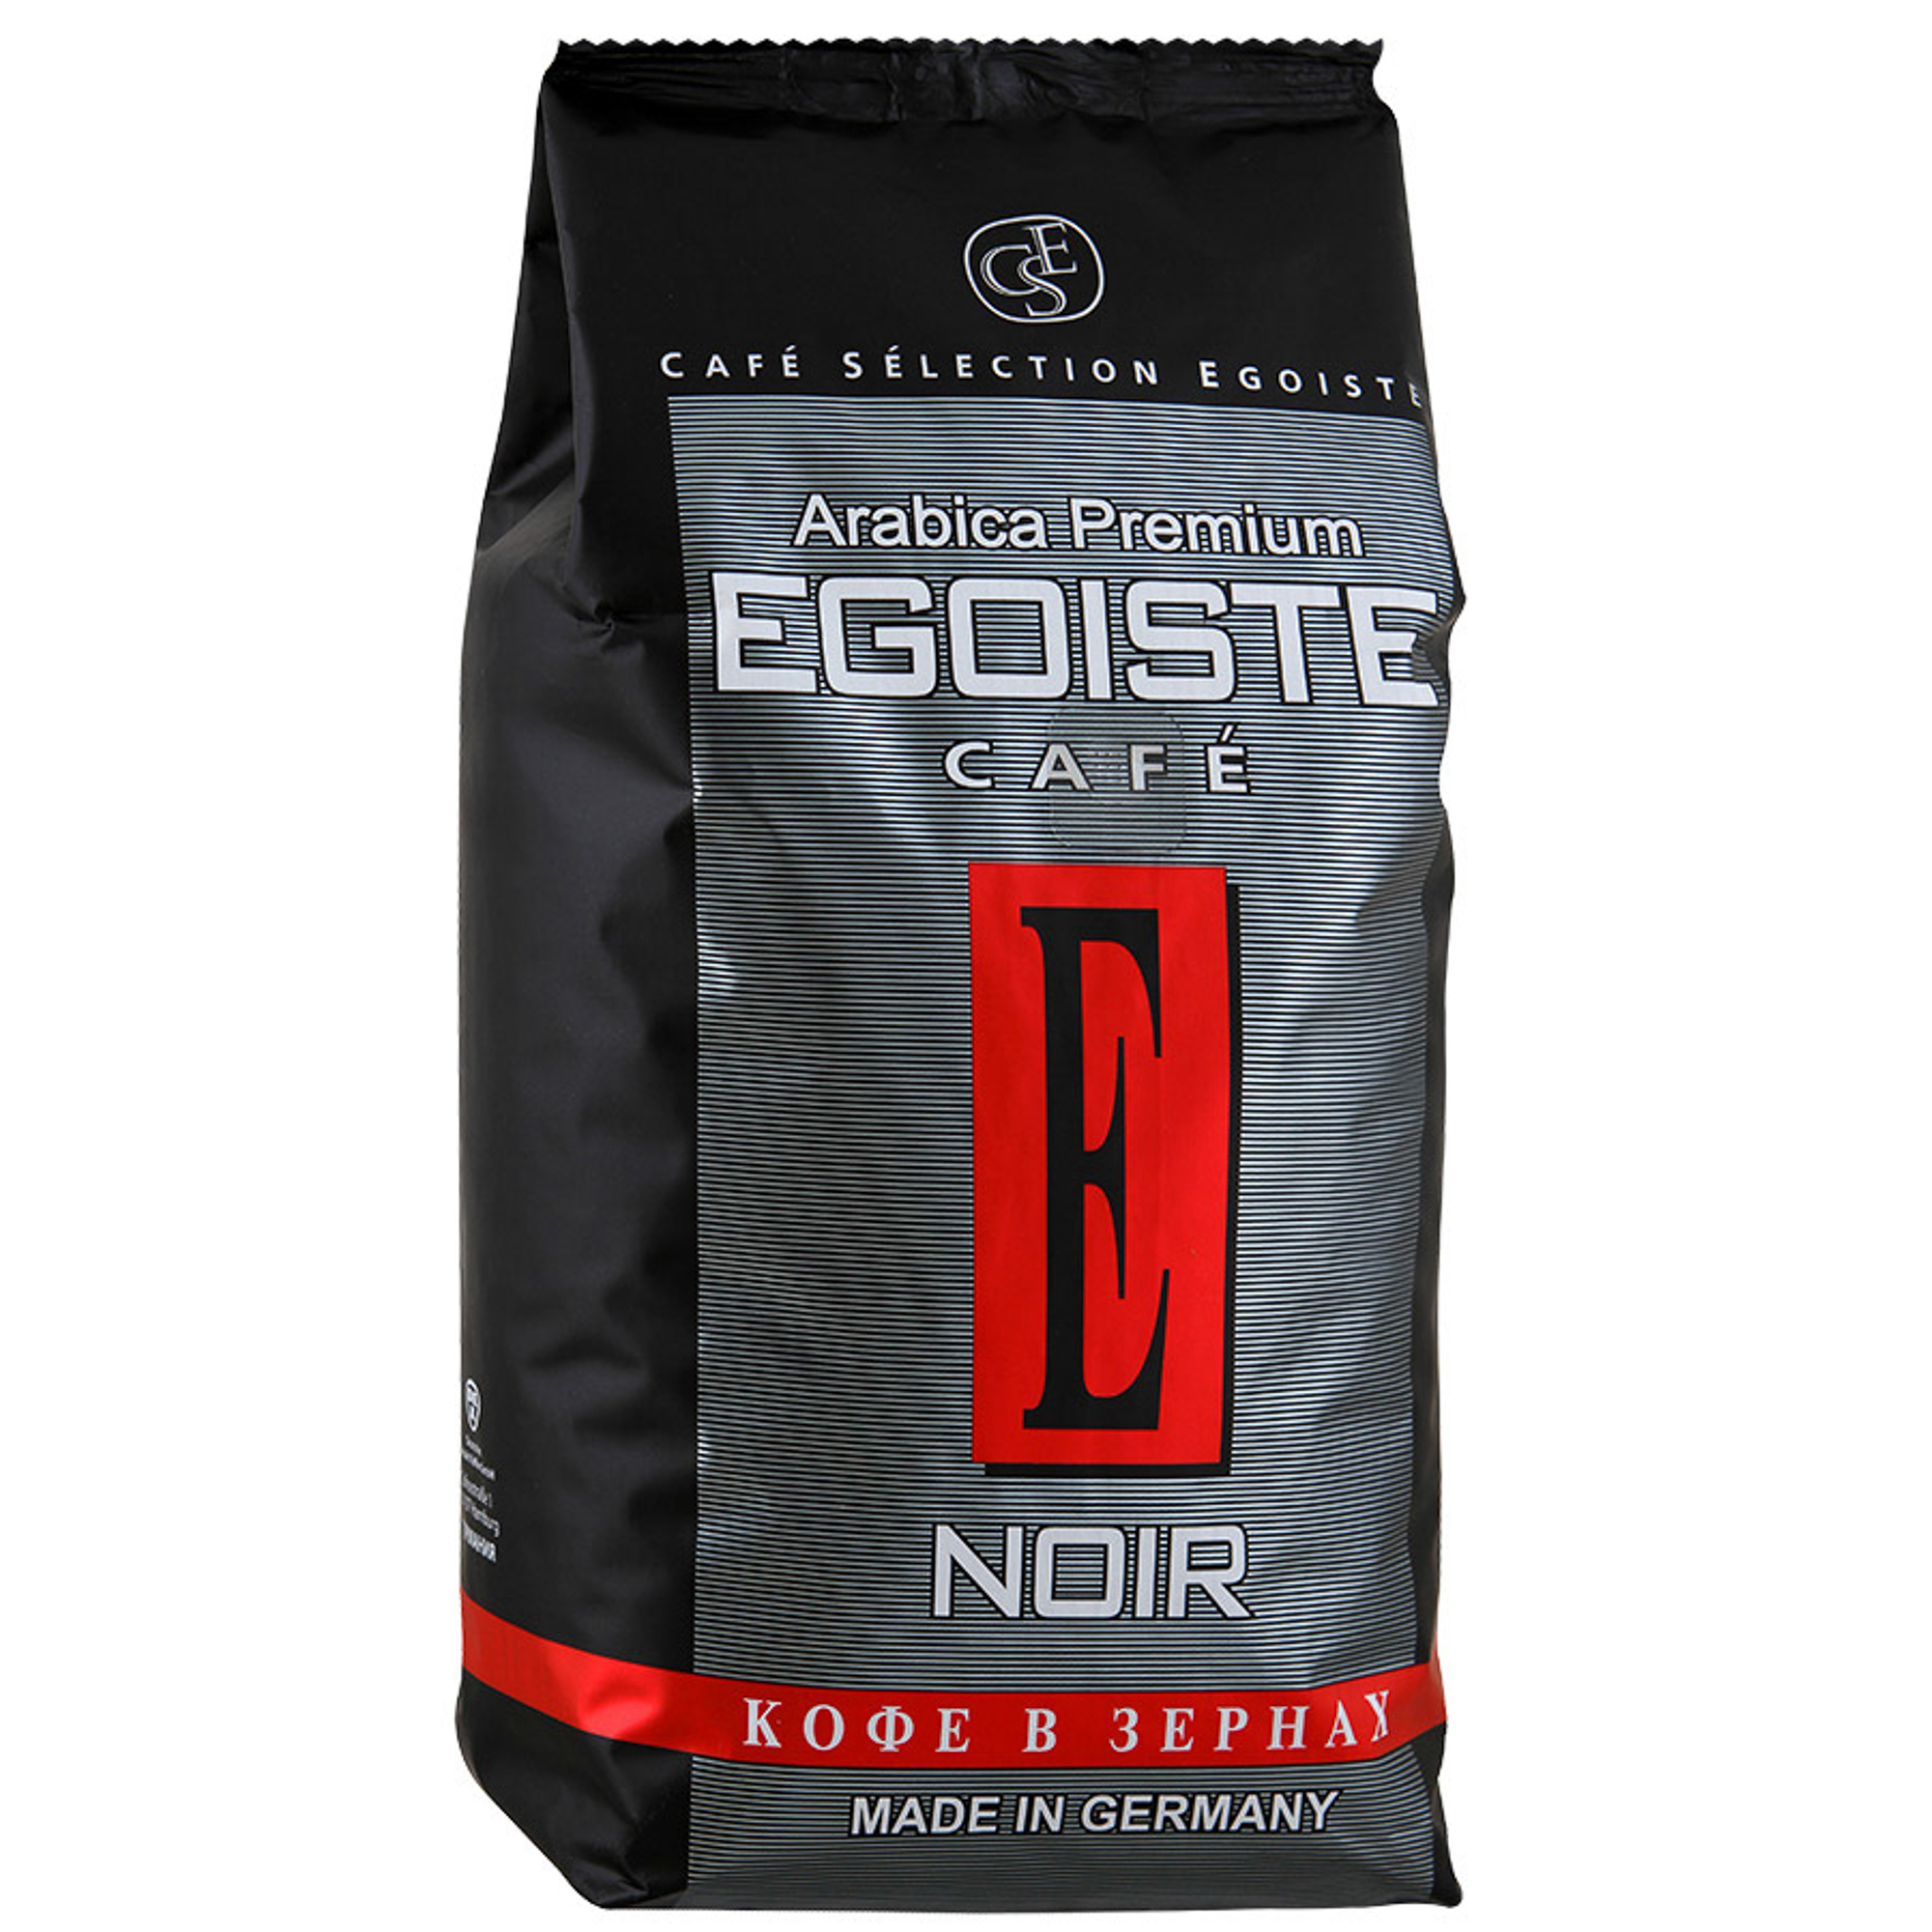 Кофе в зернах Egoiste Noir 1 кг кофе meollo ирландский крем 100% арабика в у 1 кг